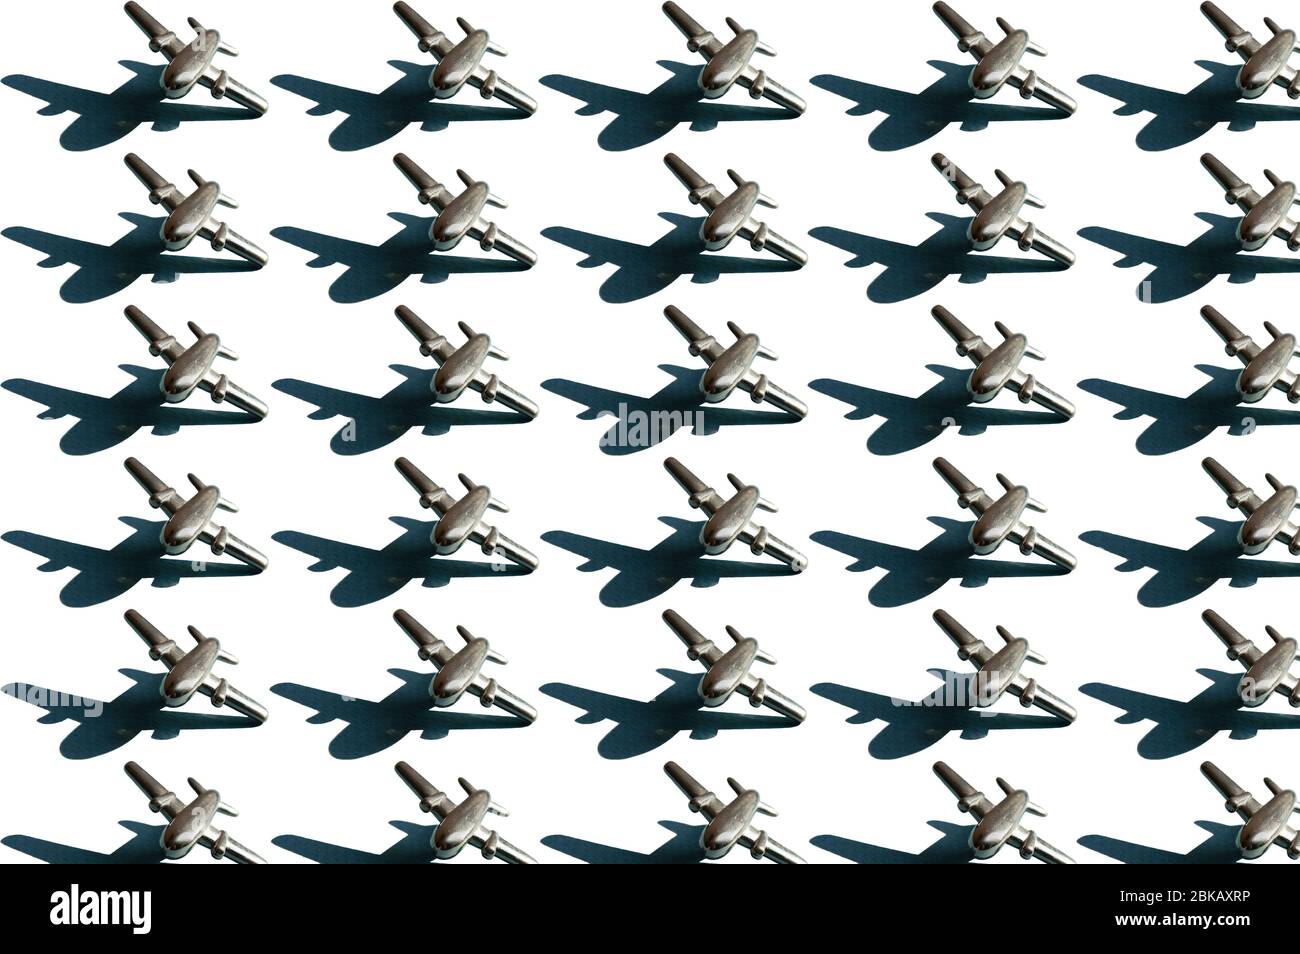 Dreißig Metallfiguren von kleinen silberfarbenen Flugzeugen mit Schatten auf dem weißen Hintergrund. Konzeptionelle geometrische Kunst trendy Muster. Luftfahrt Stockfoto